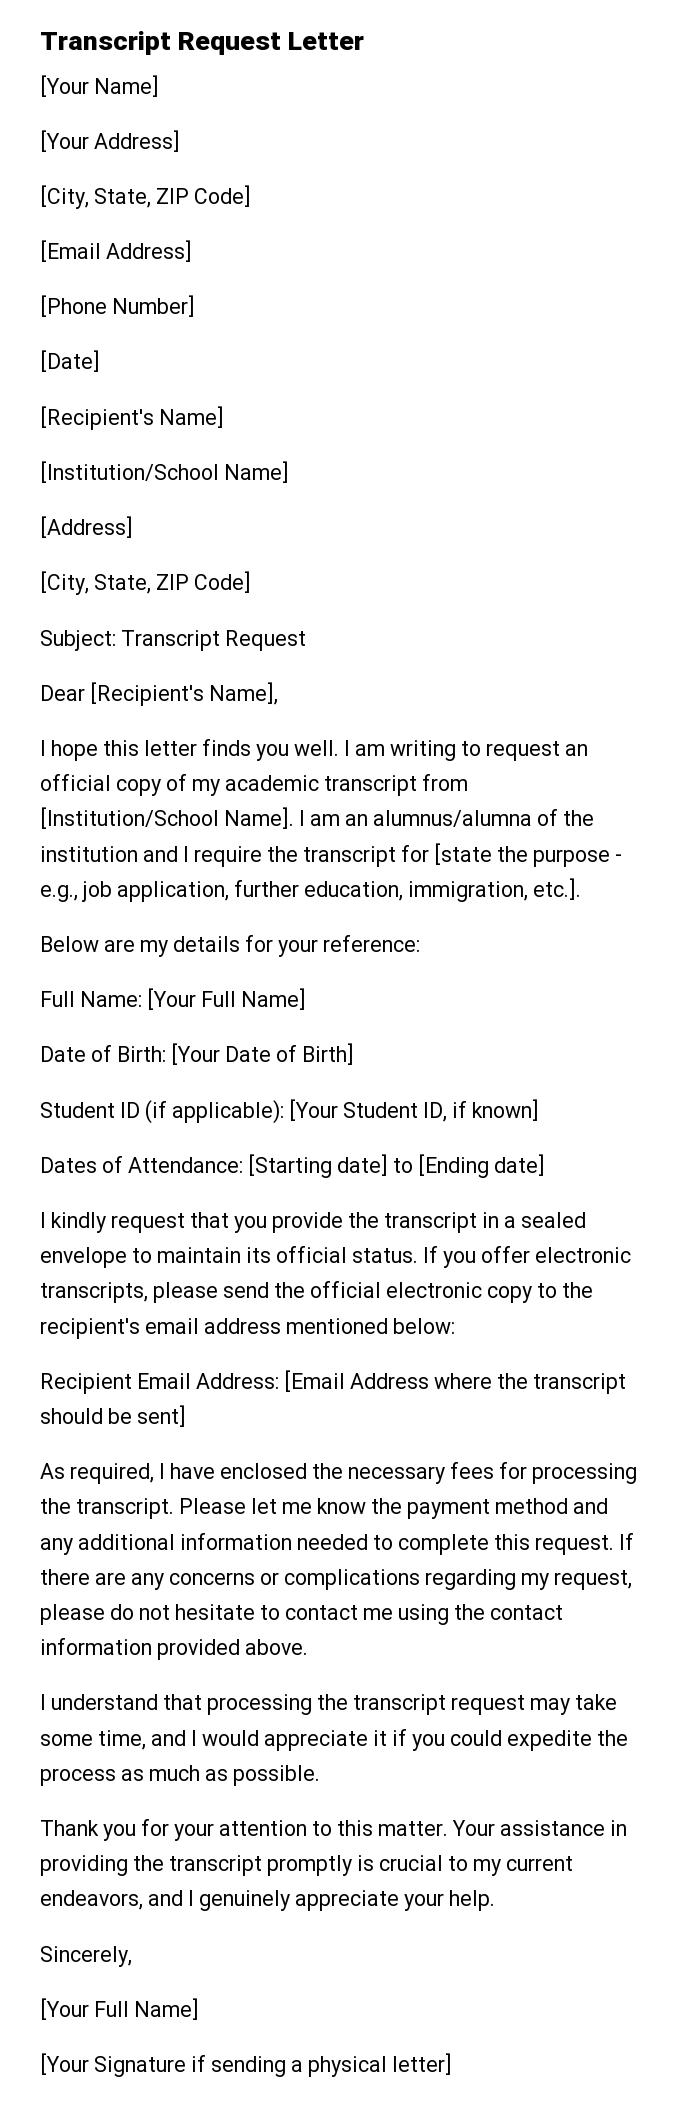 Transcript Request Letter